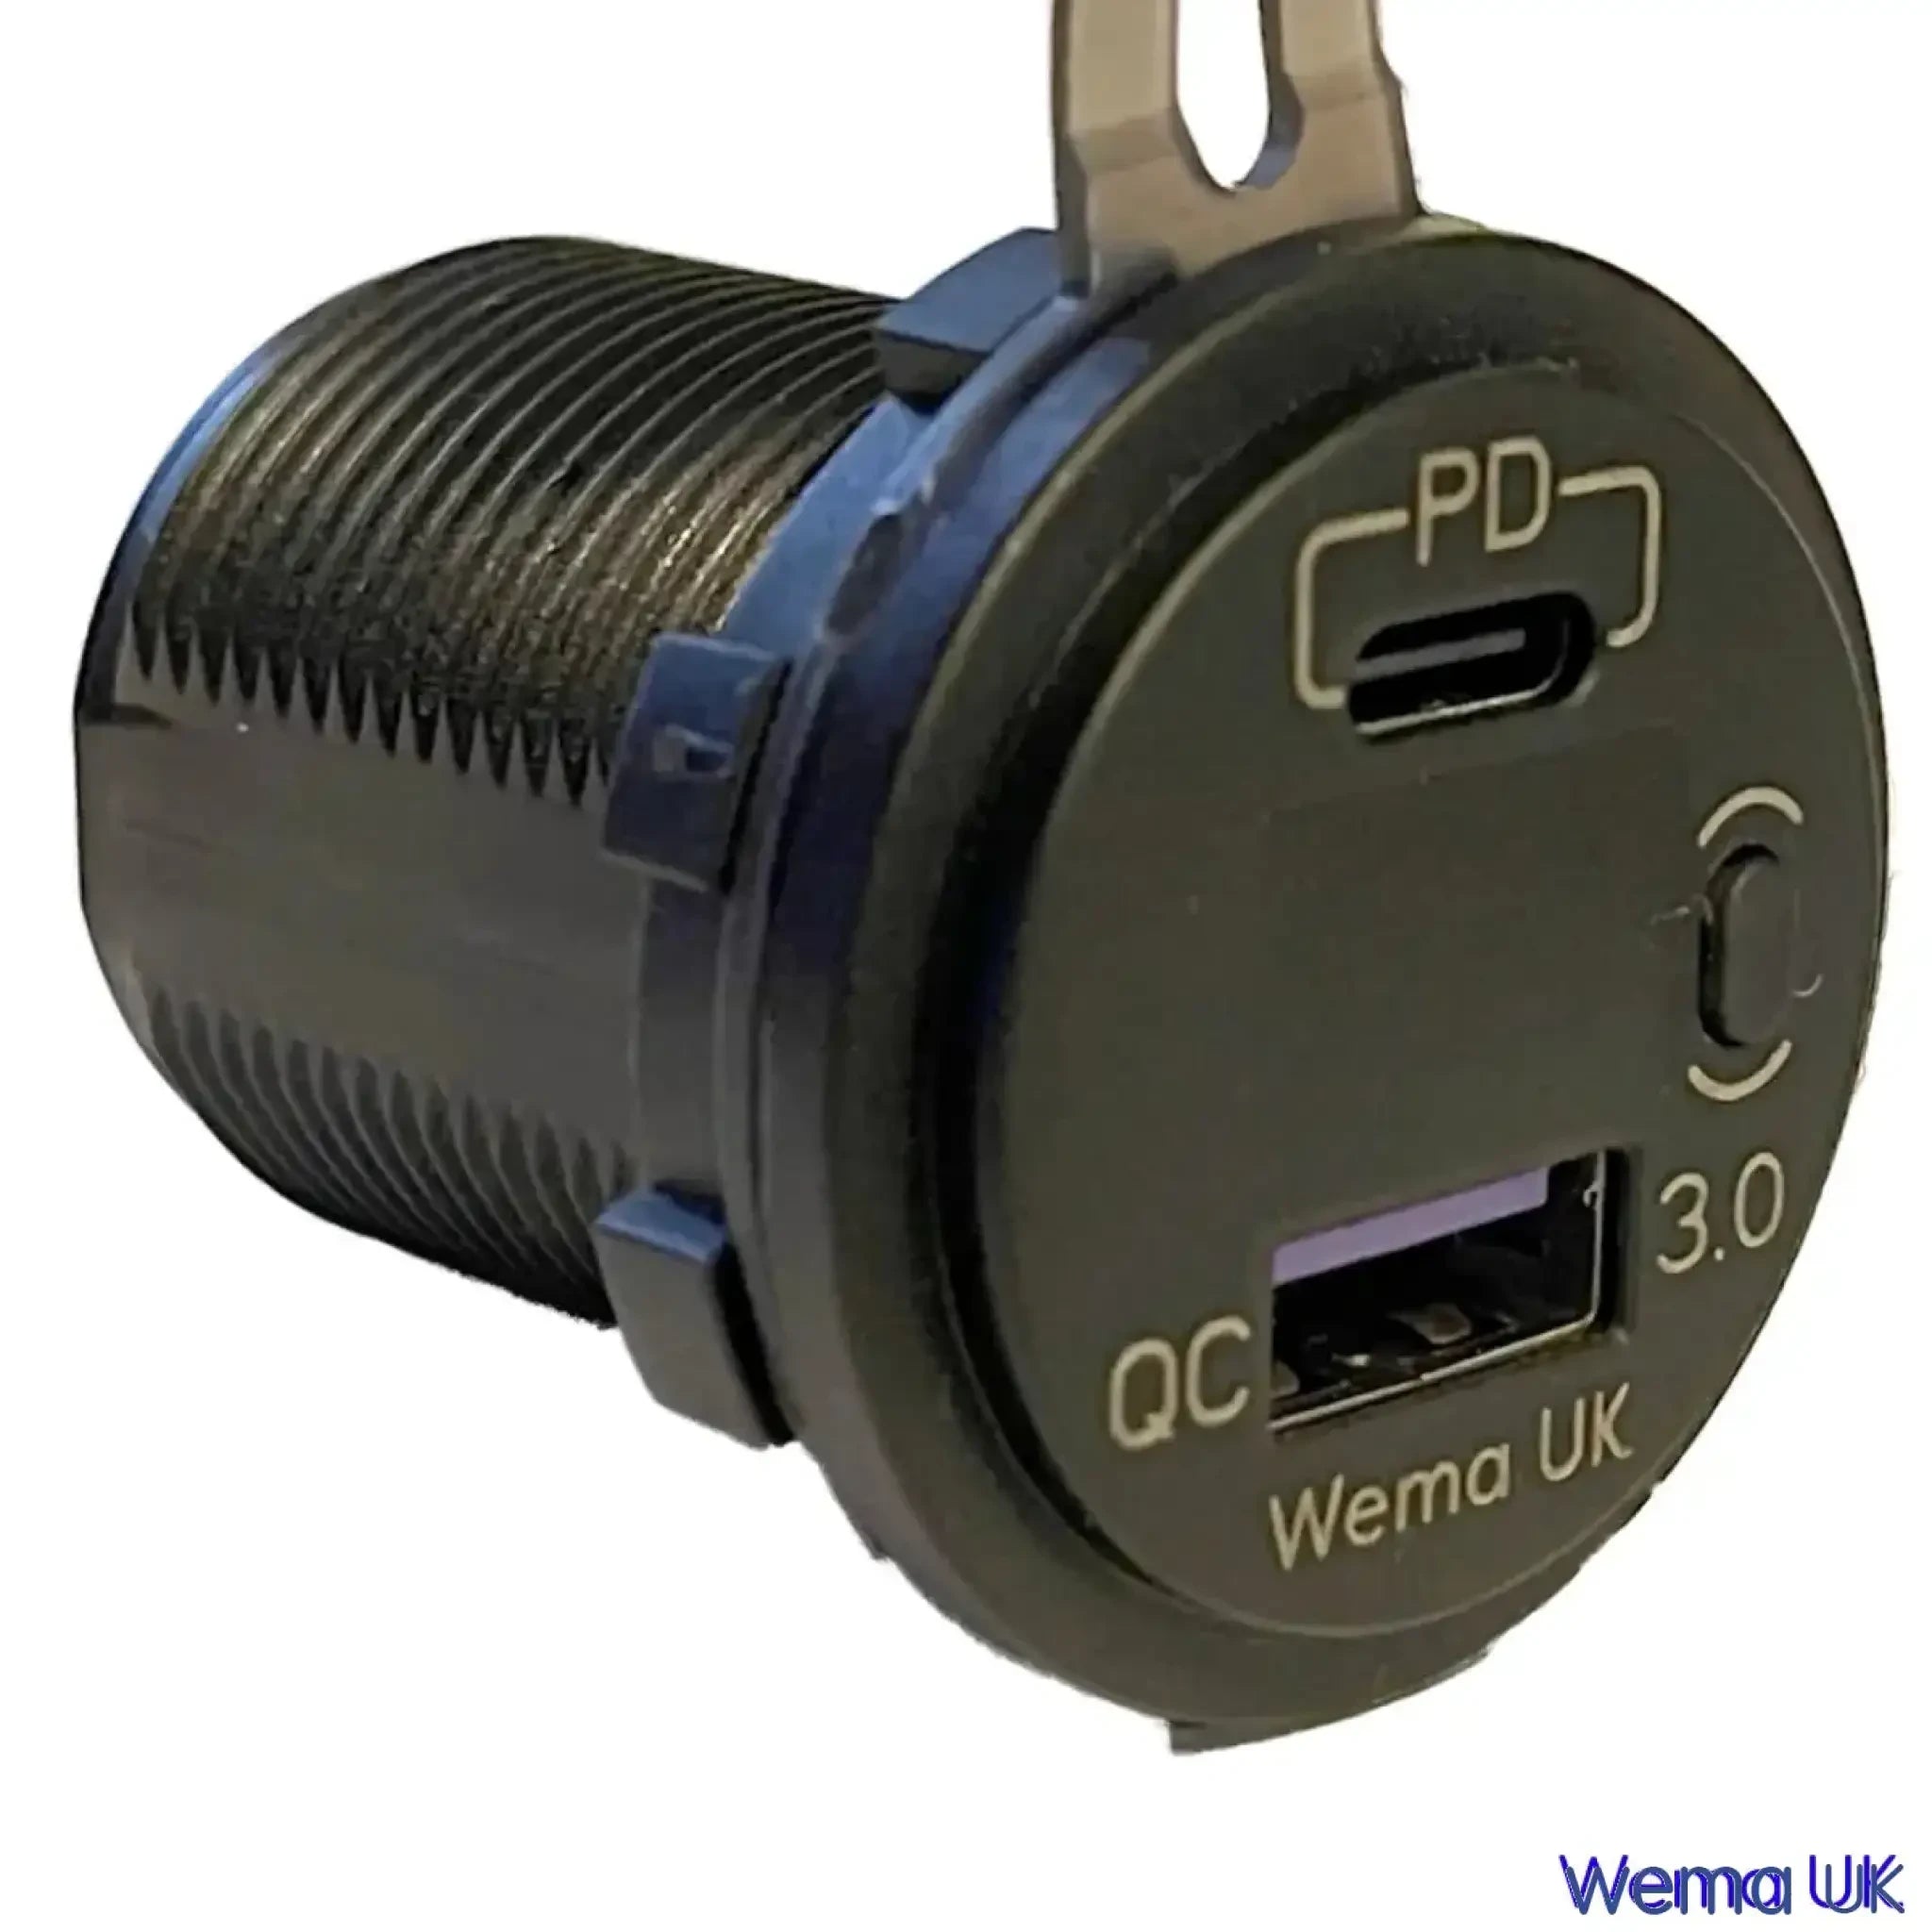 USB Charging Port & Voltmeter